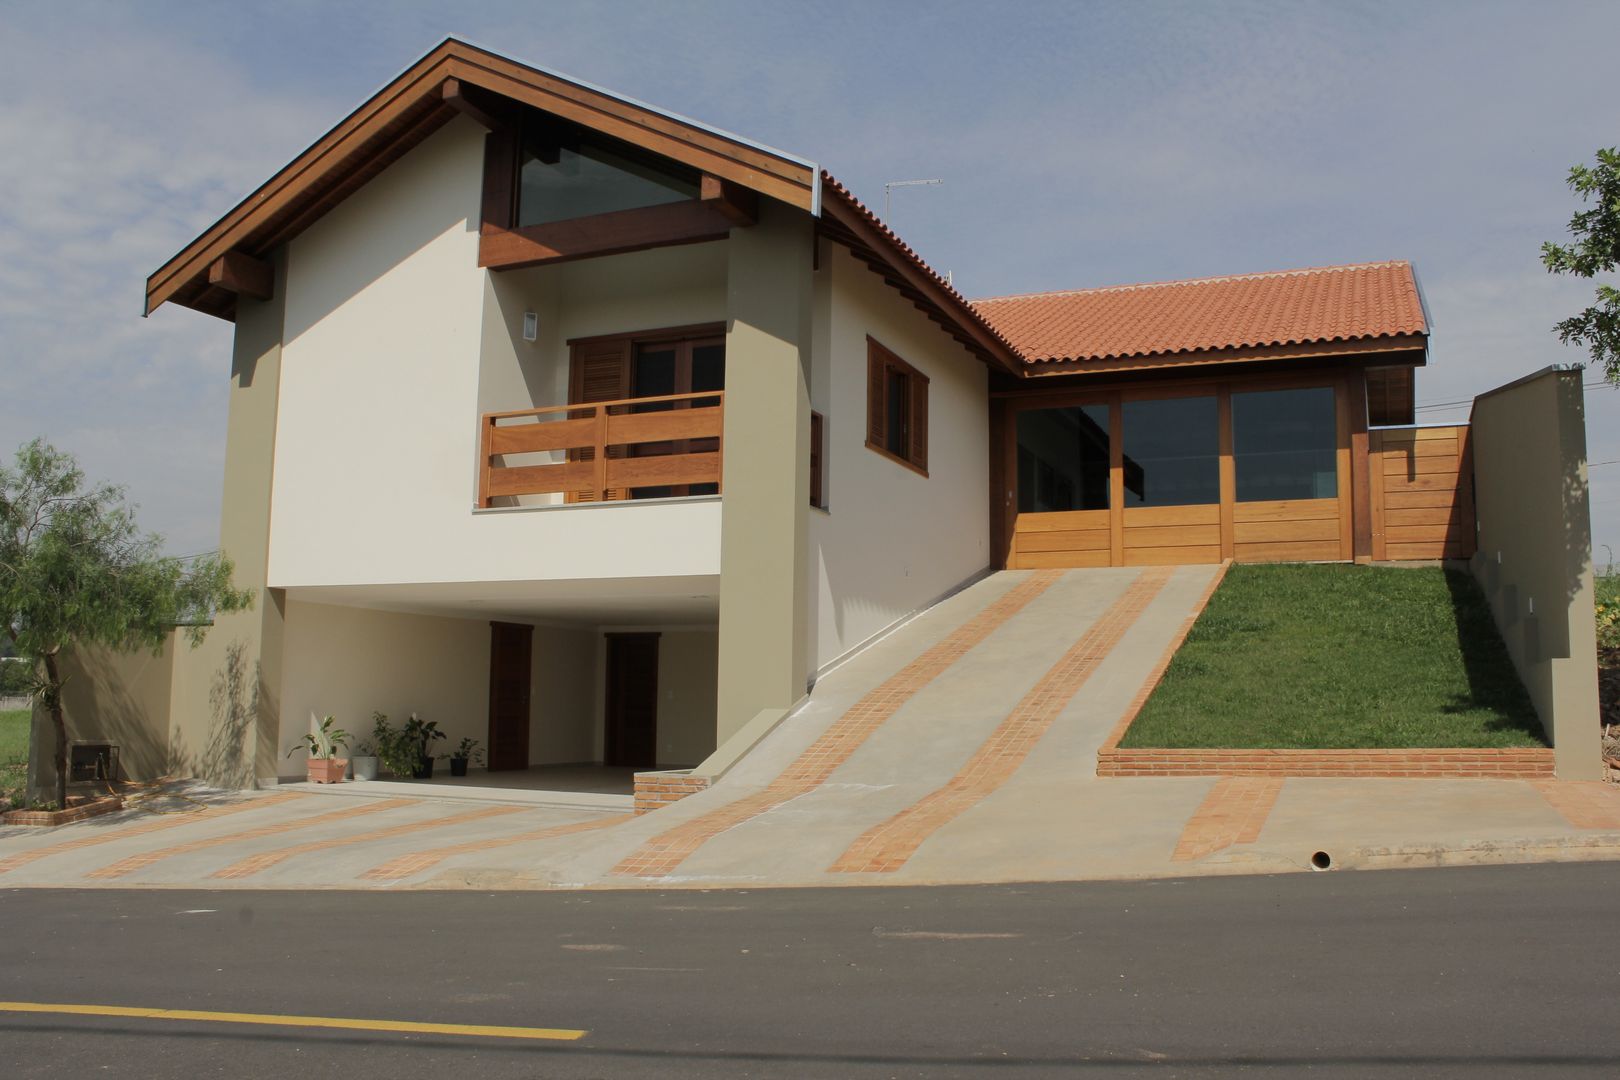 Casa FC, Lozí - Projeto e Obra Lozí - Projeto e Obra Rustic style houses